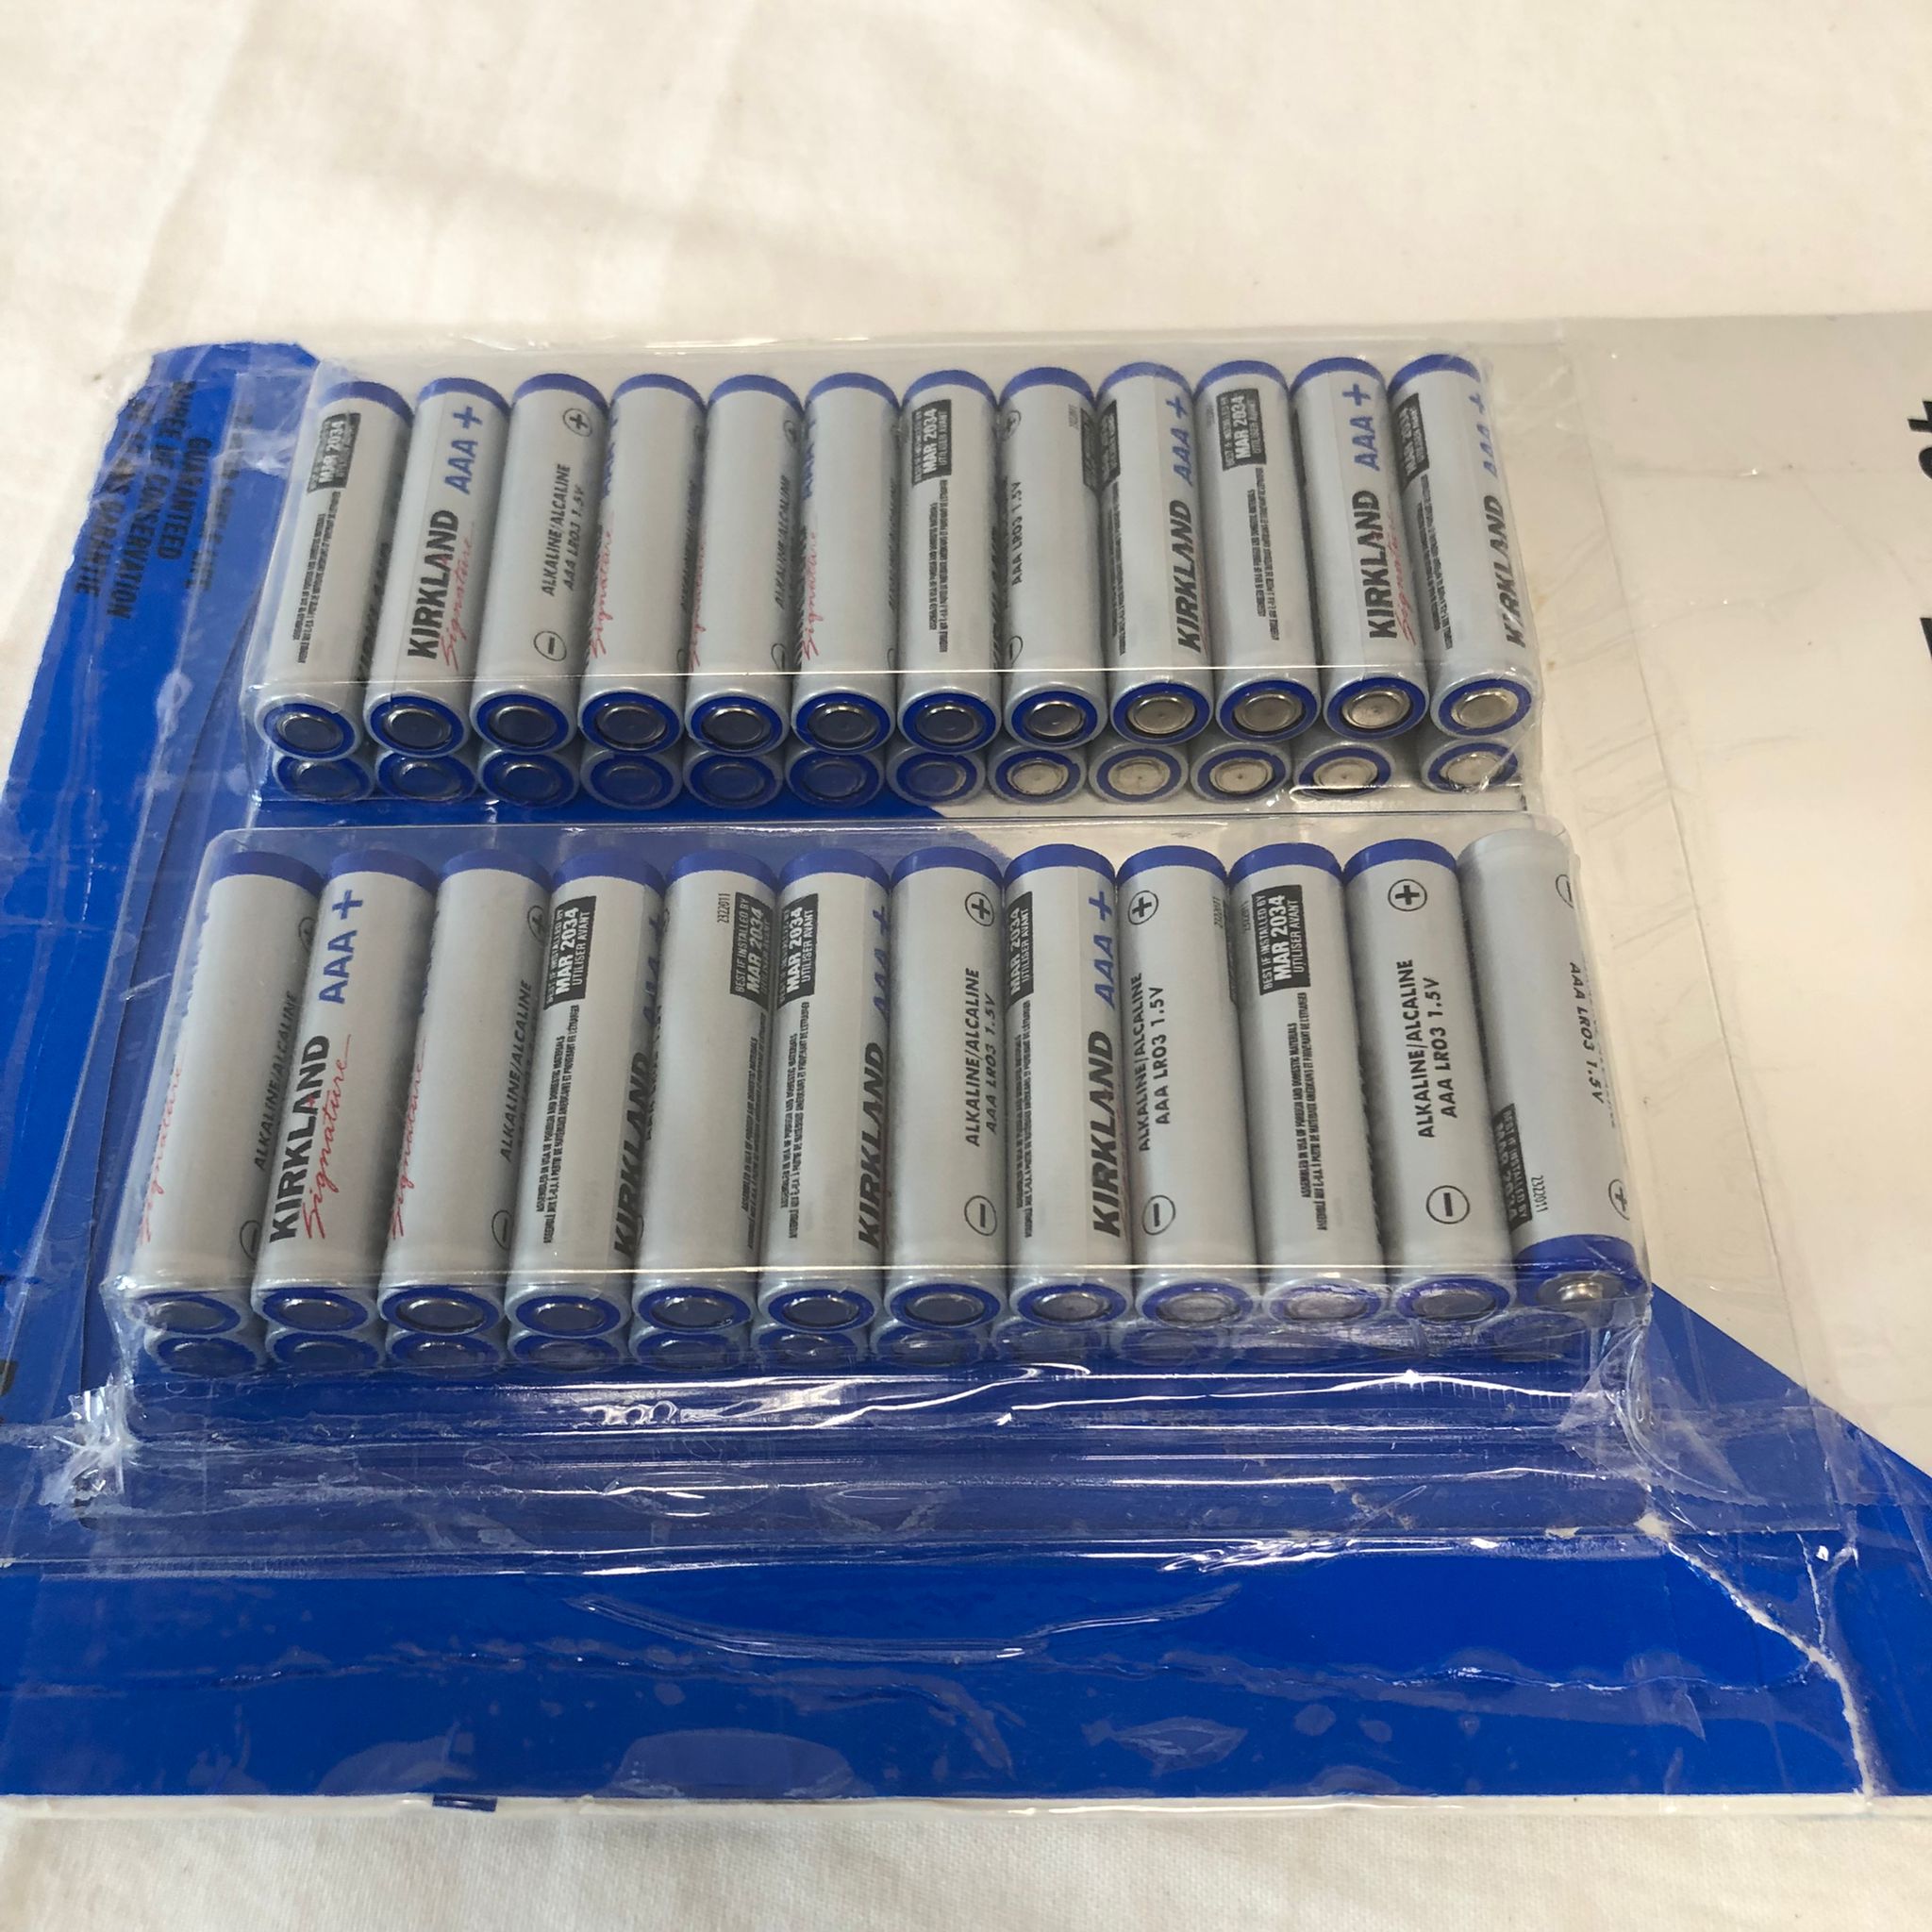 Kirkland Signature Alkaline AAA Batteries, 48-count